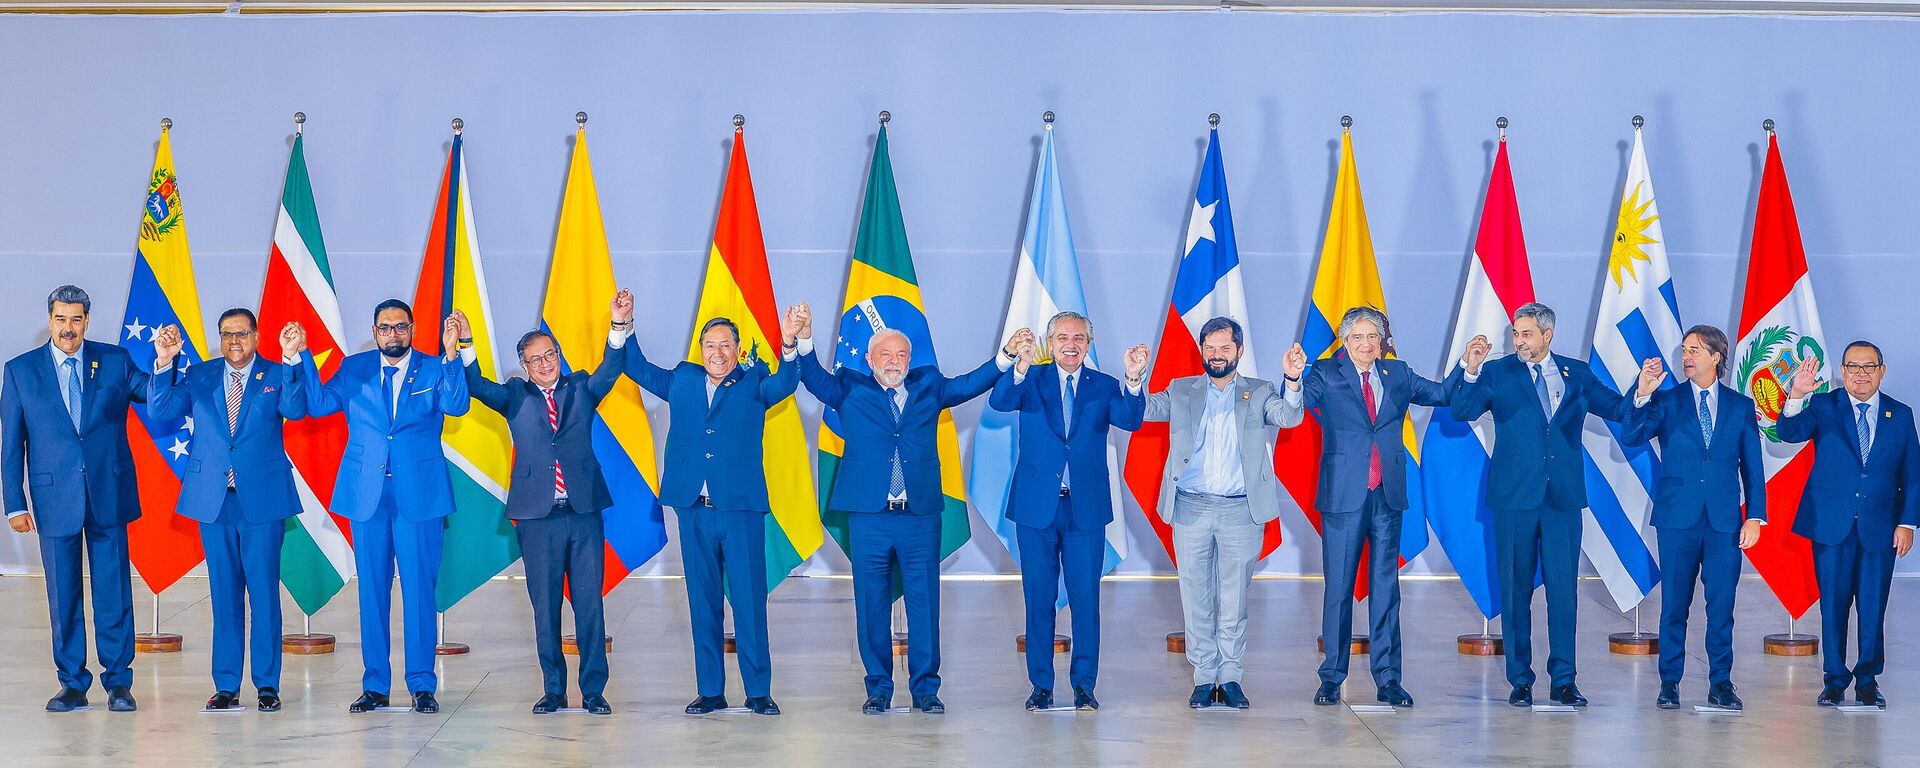 Fotografia oficial dos Presidentes dos países da América do Sul durante a Cúpula do Sul, 30 de maio de 2023 - Sputnik Brasil, 1920, 03.06.2023